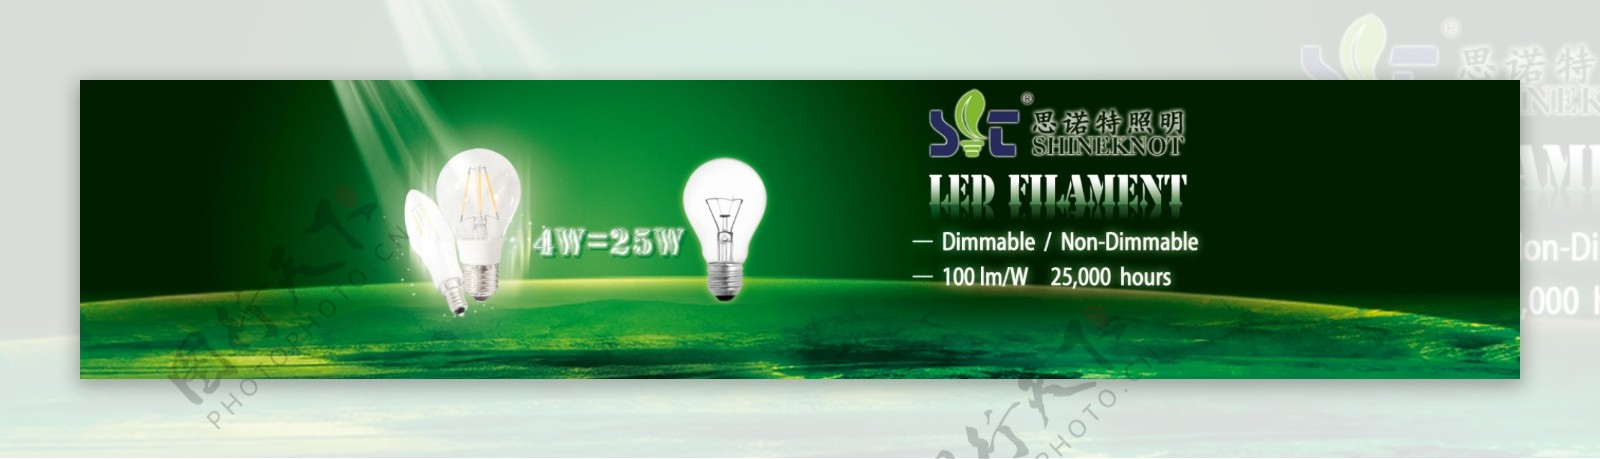 网站首页LED光效率高节能环保图片